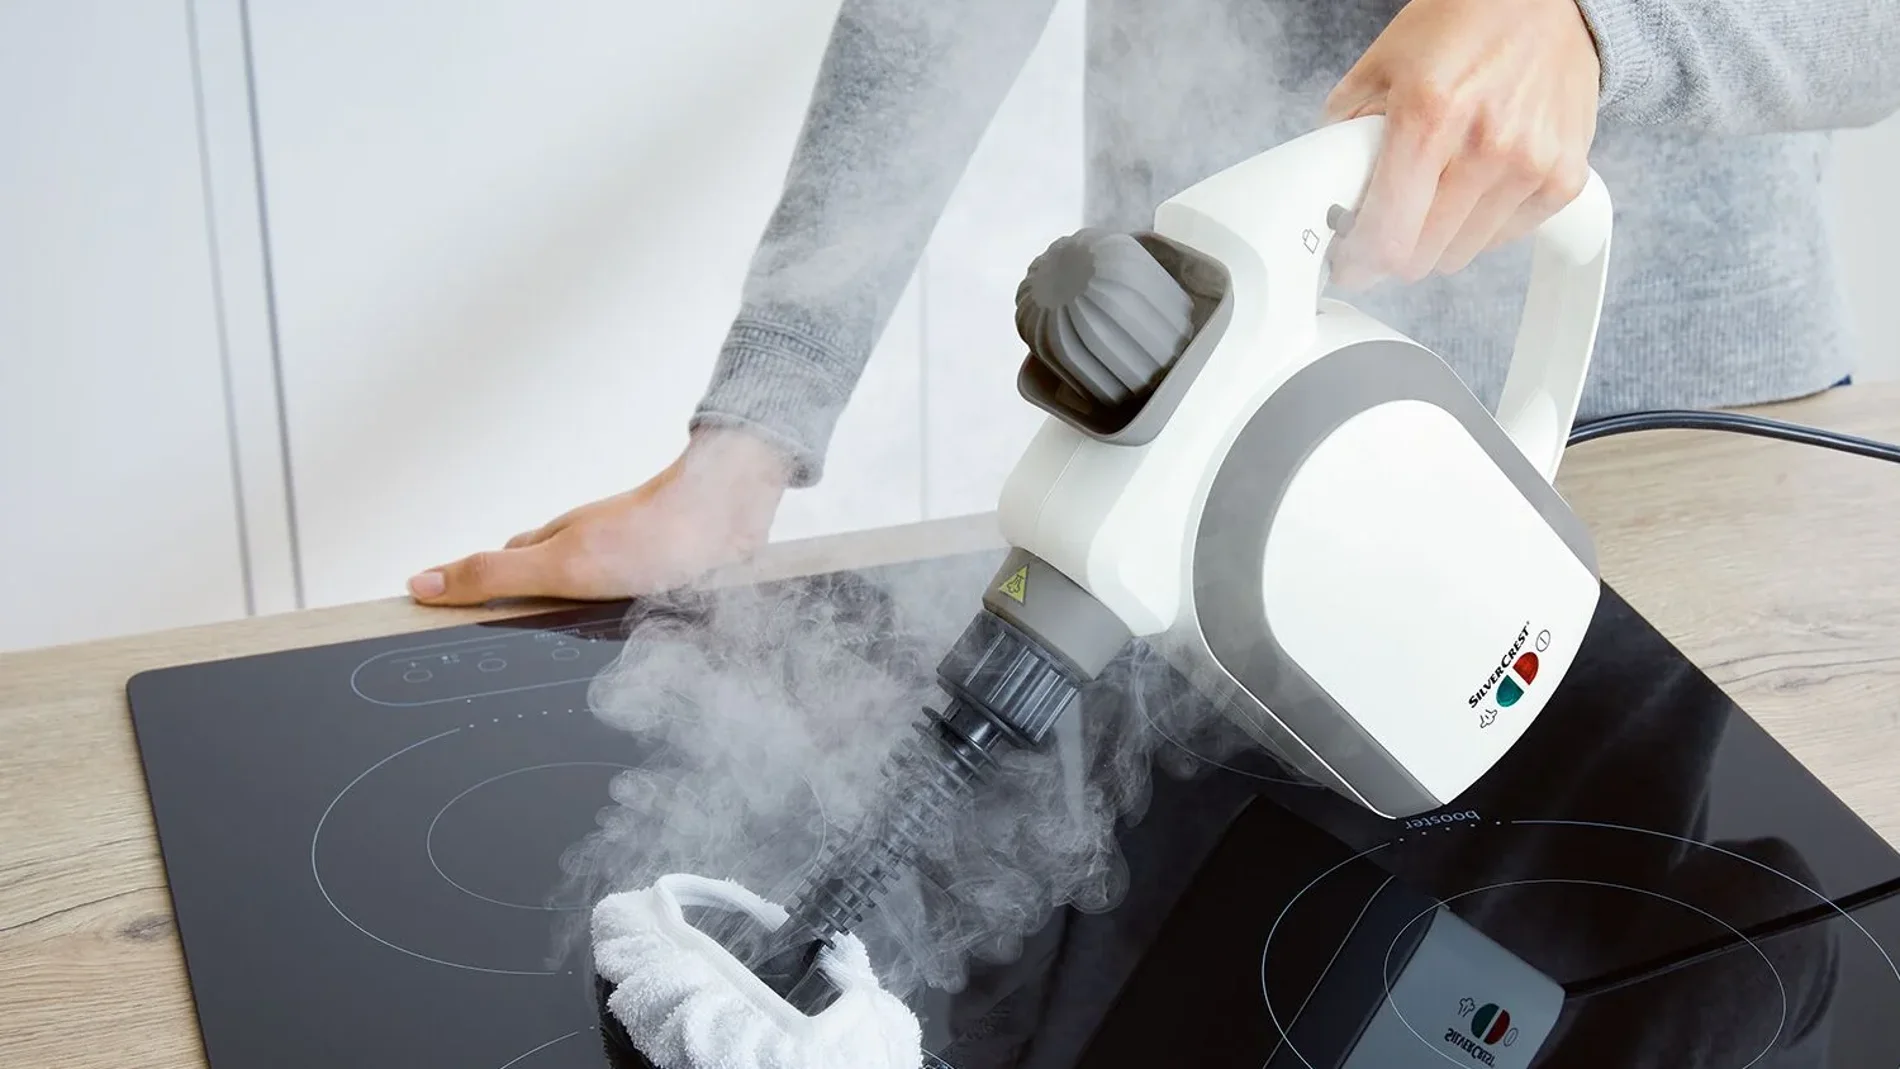 Limpiador a vapor de mano de la marca Silvercrest , se puede usar para limpiar cualquier superficie